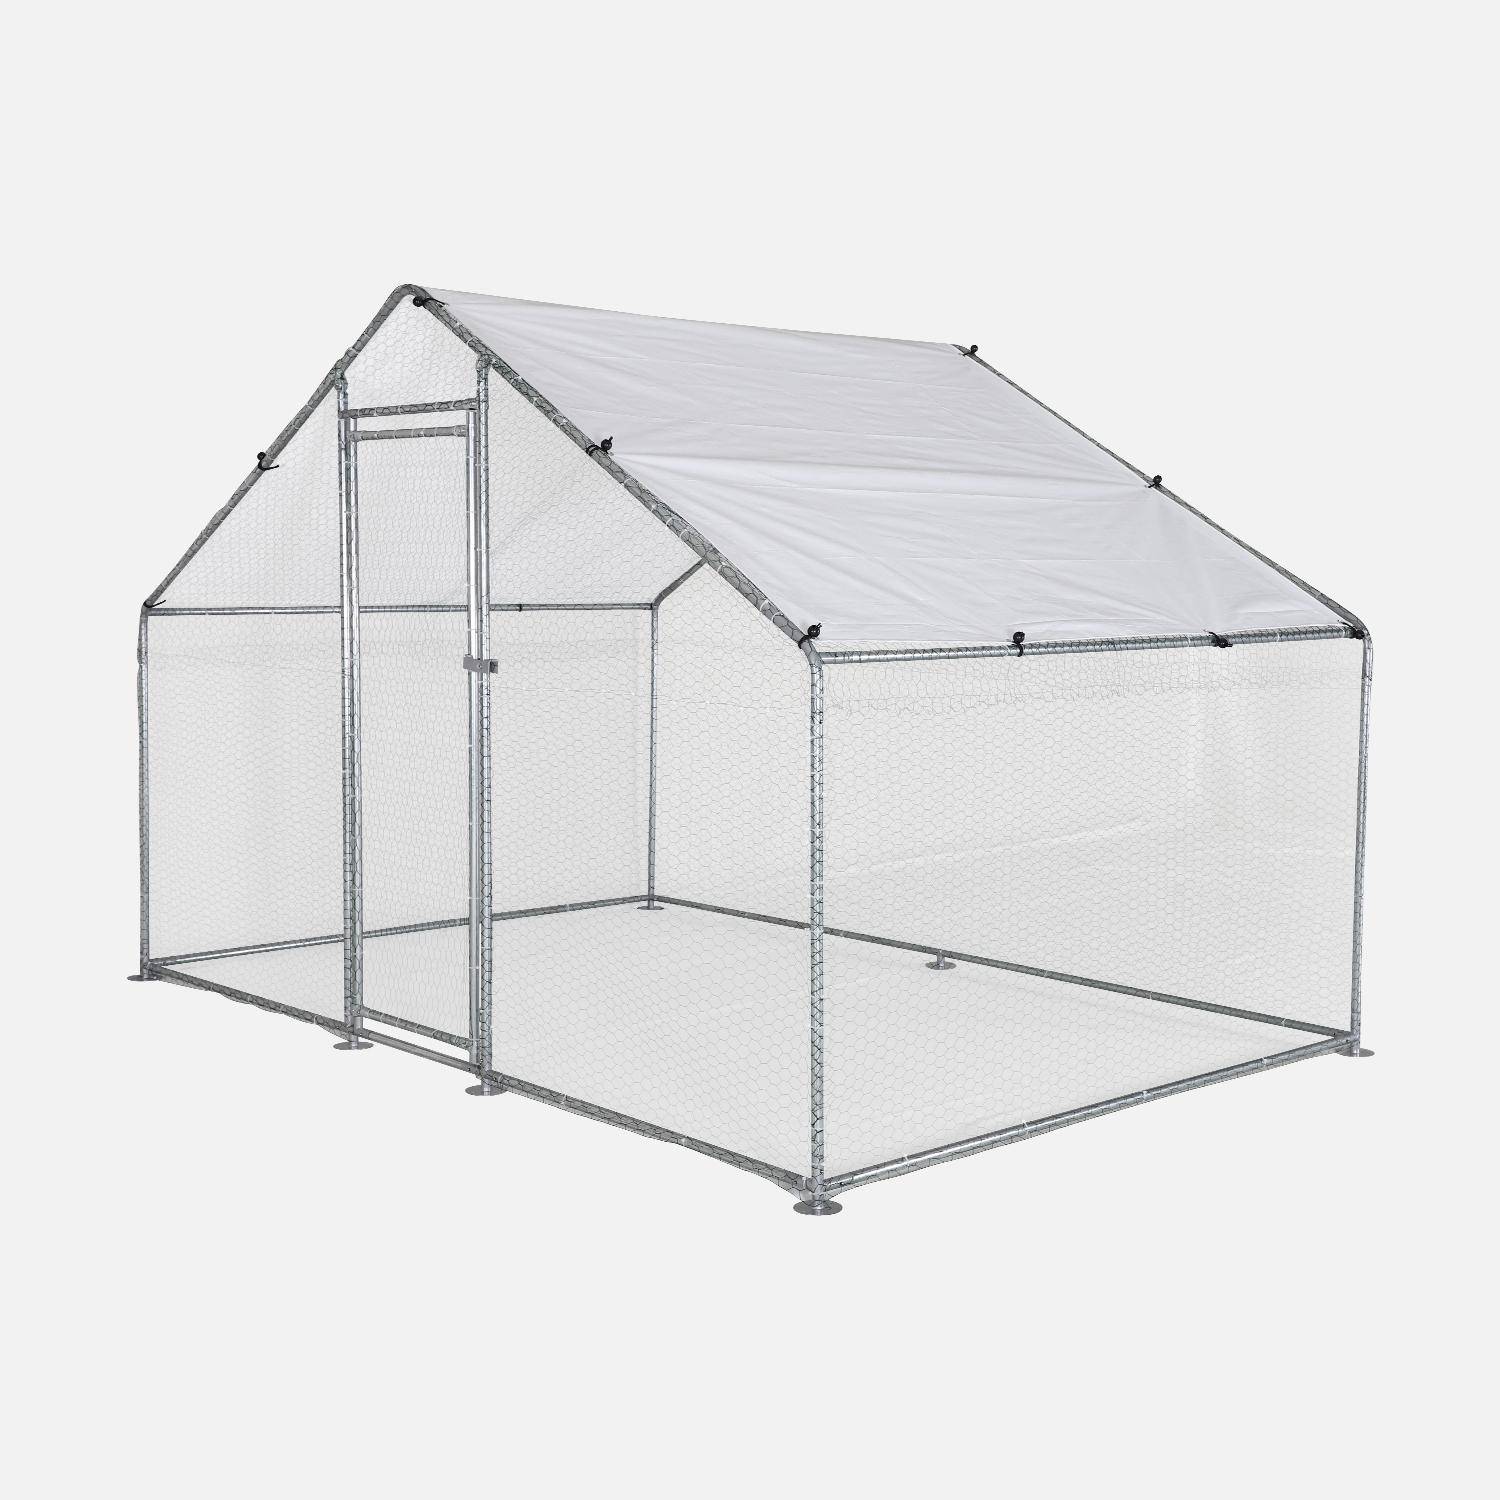 Recinto para gallinero 6m² - Babette - Pajarera de acero galvanizado, techo de lona impermeable y resistente a los rayos UV, puerta con pestillo, recinto para animales 3x2m Photo1